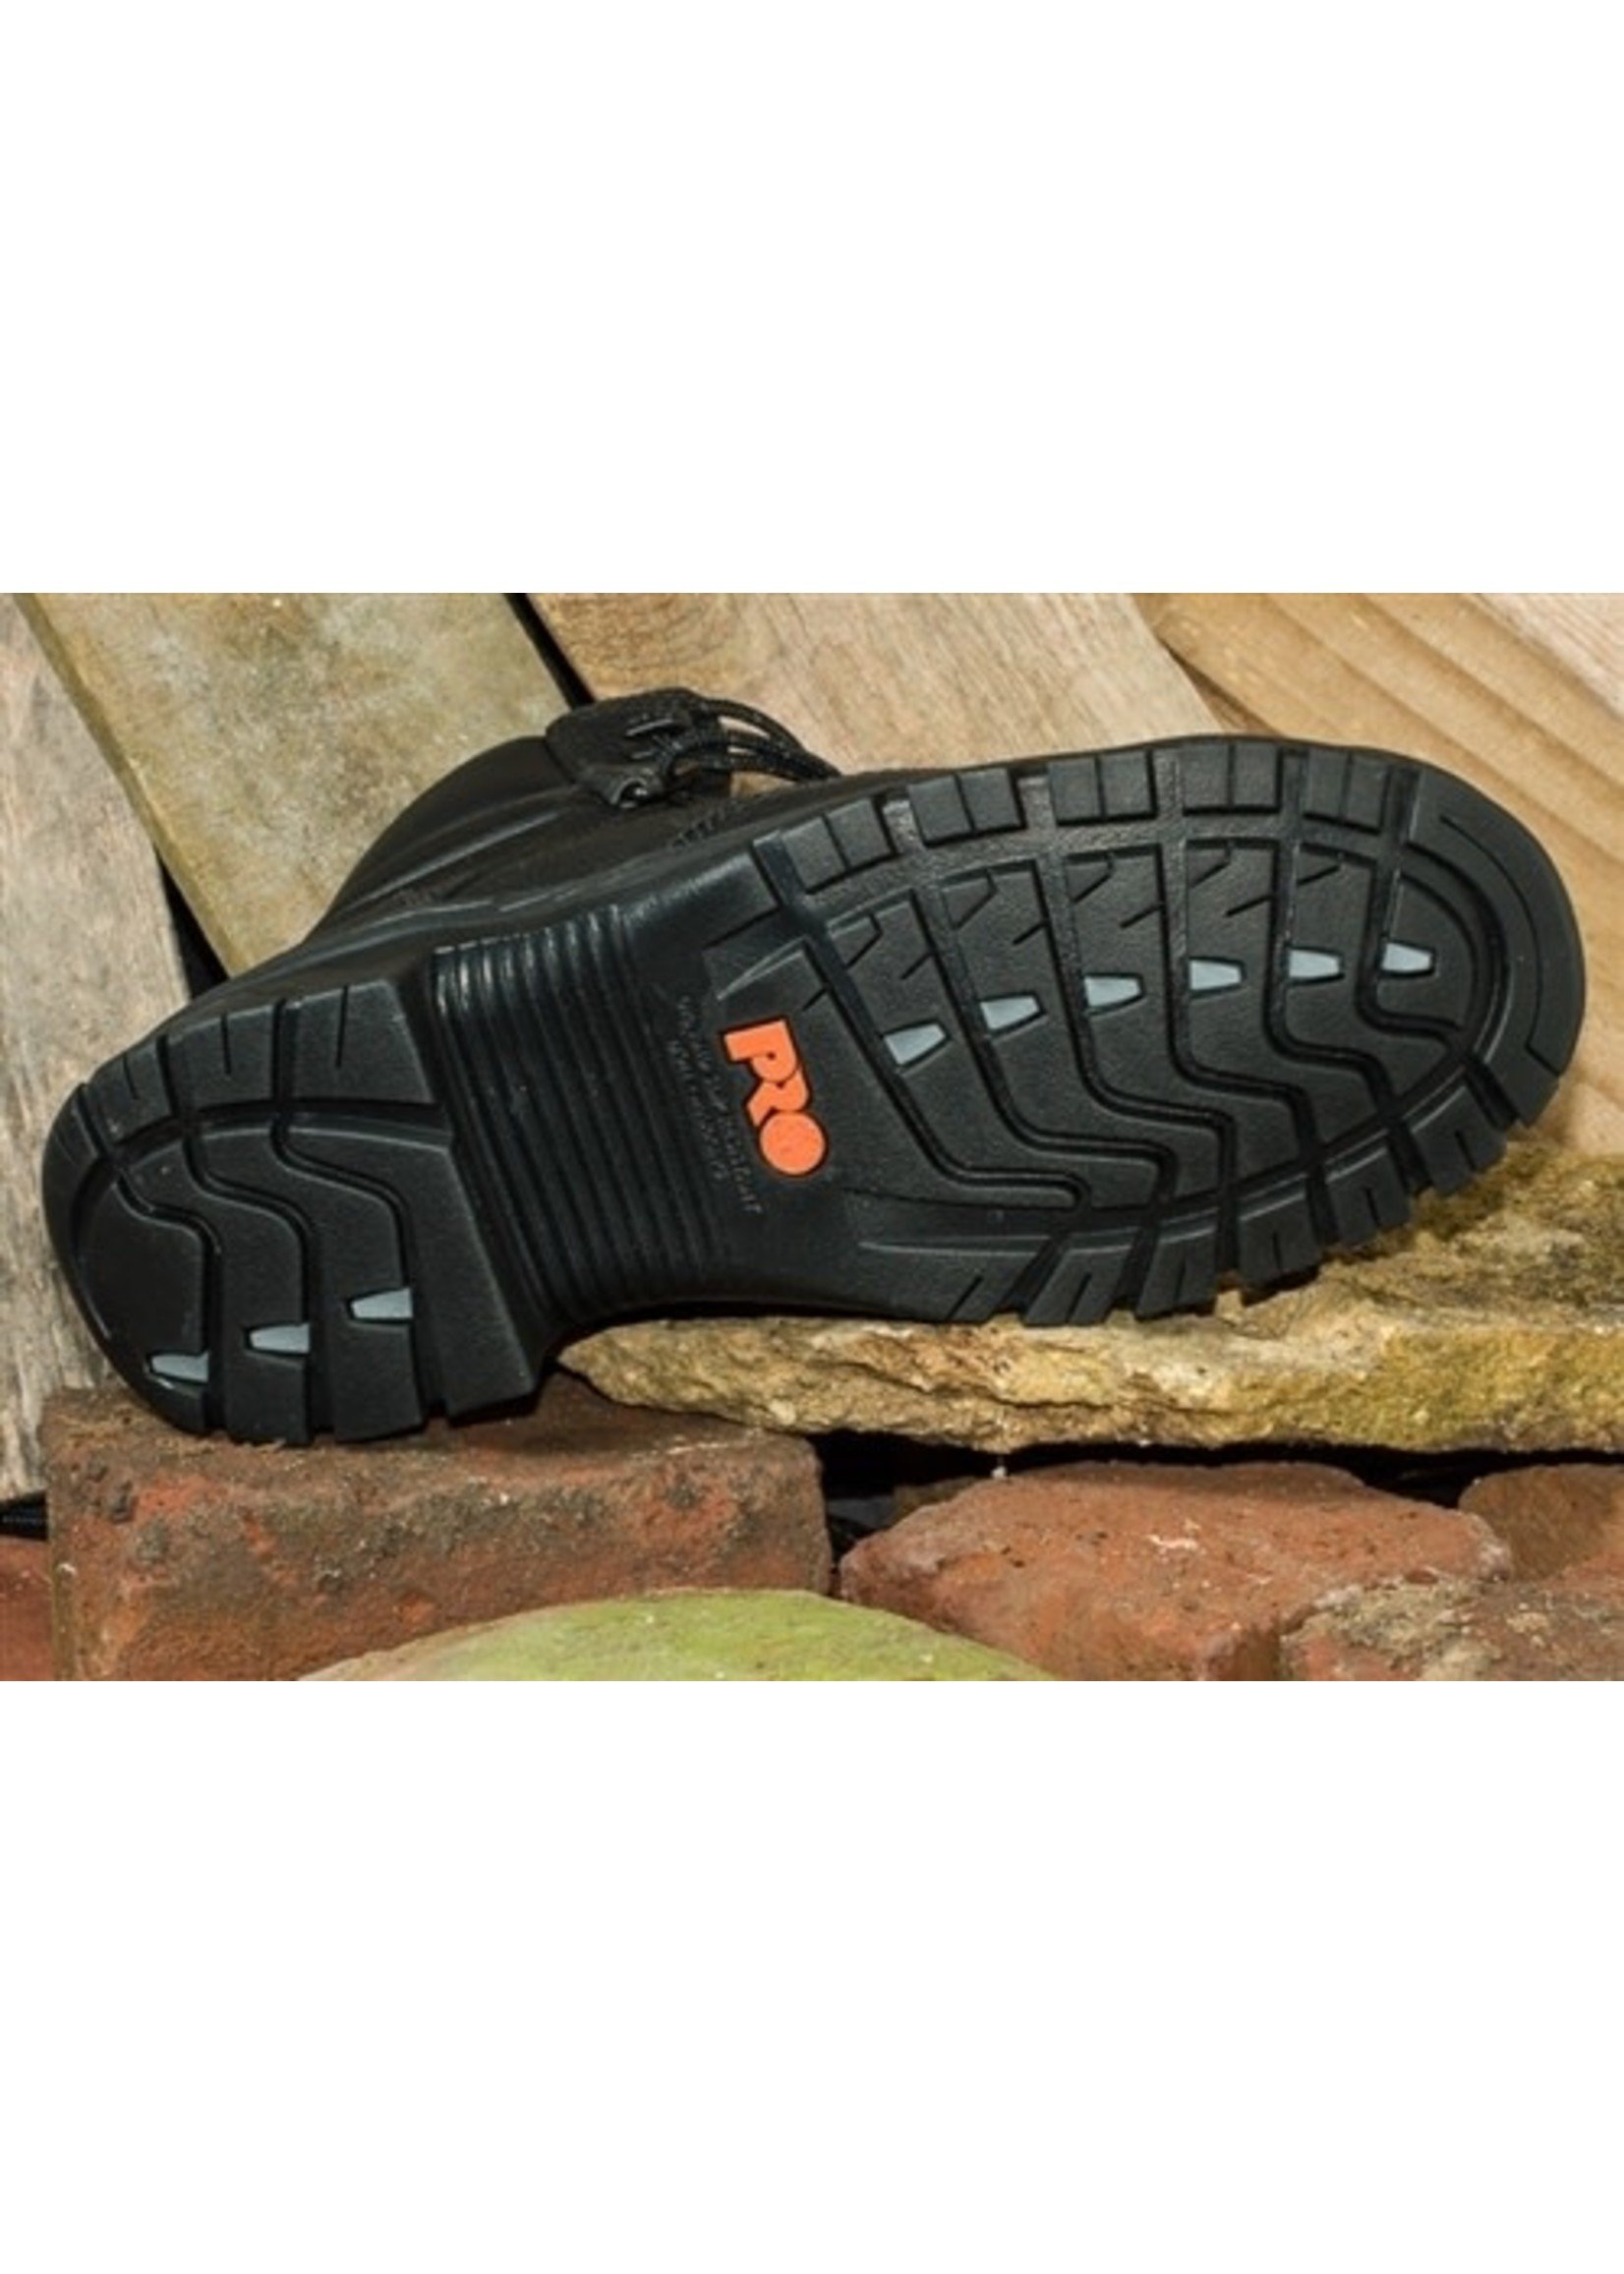 Timberland Pro Men's 6" Black Helix Waterproof Composite Toe Work Boots  87517